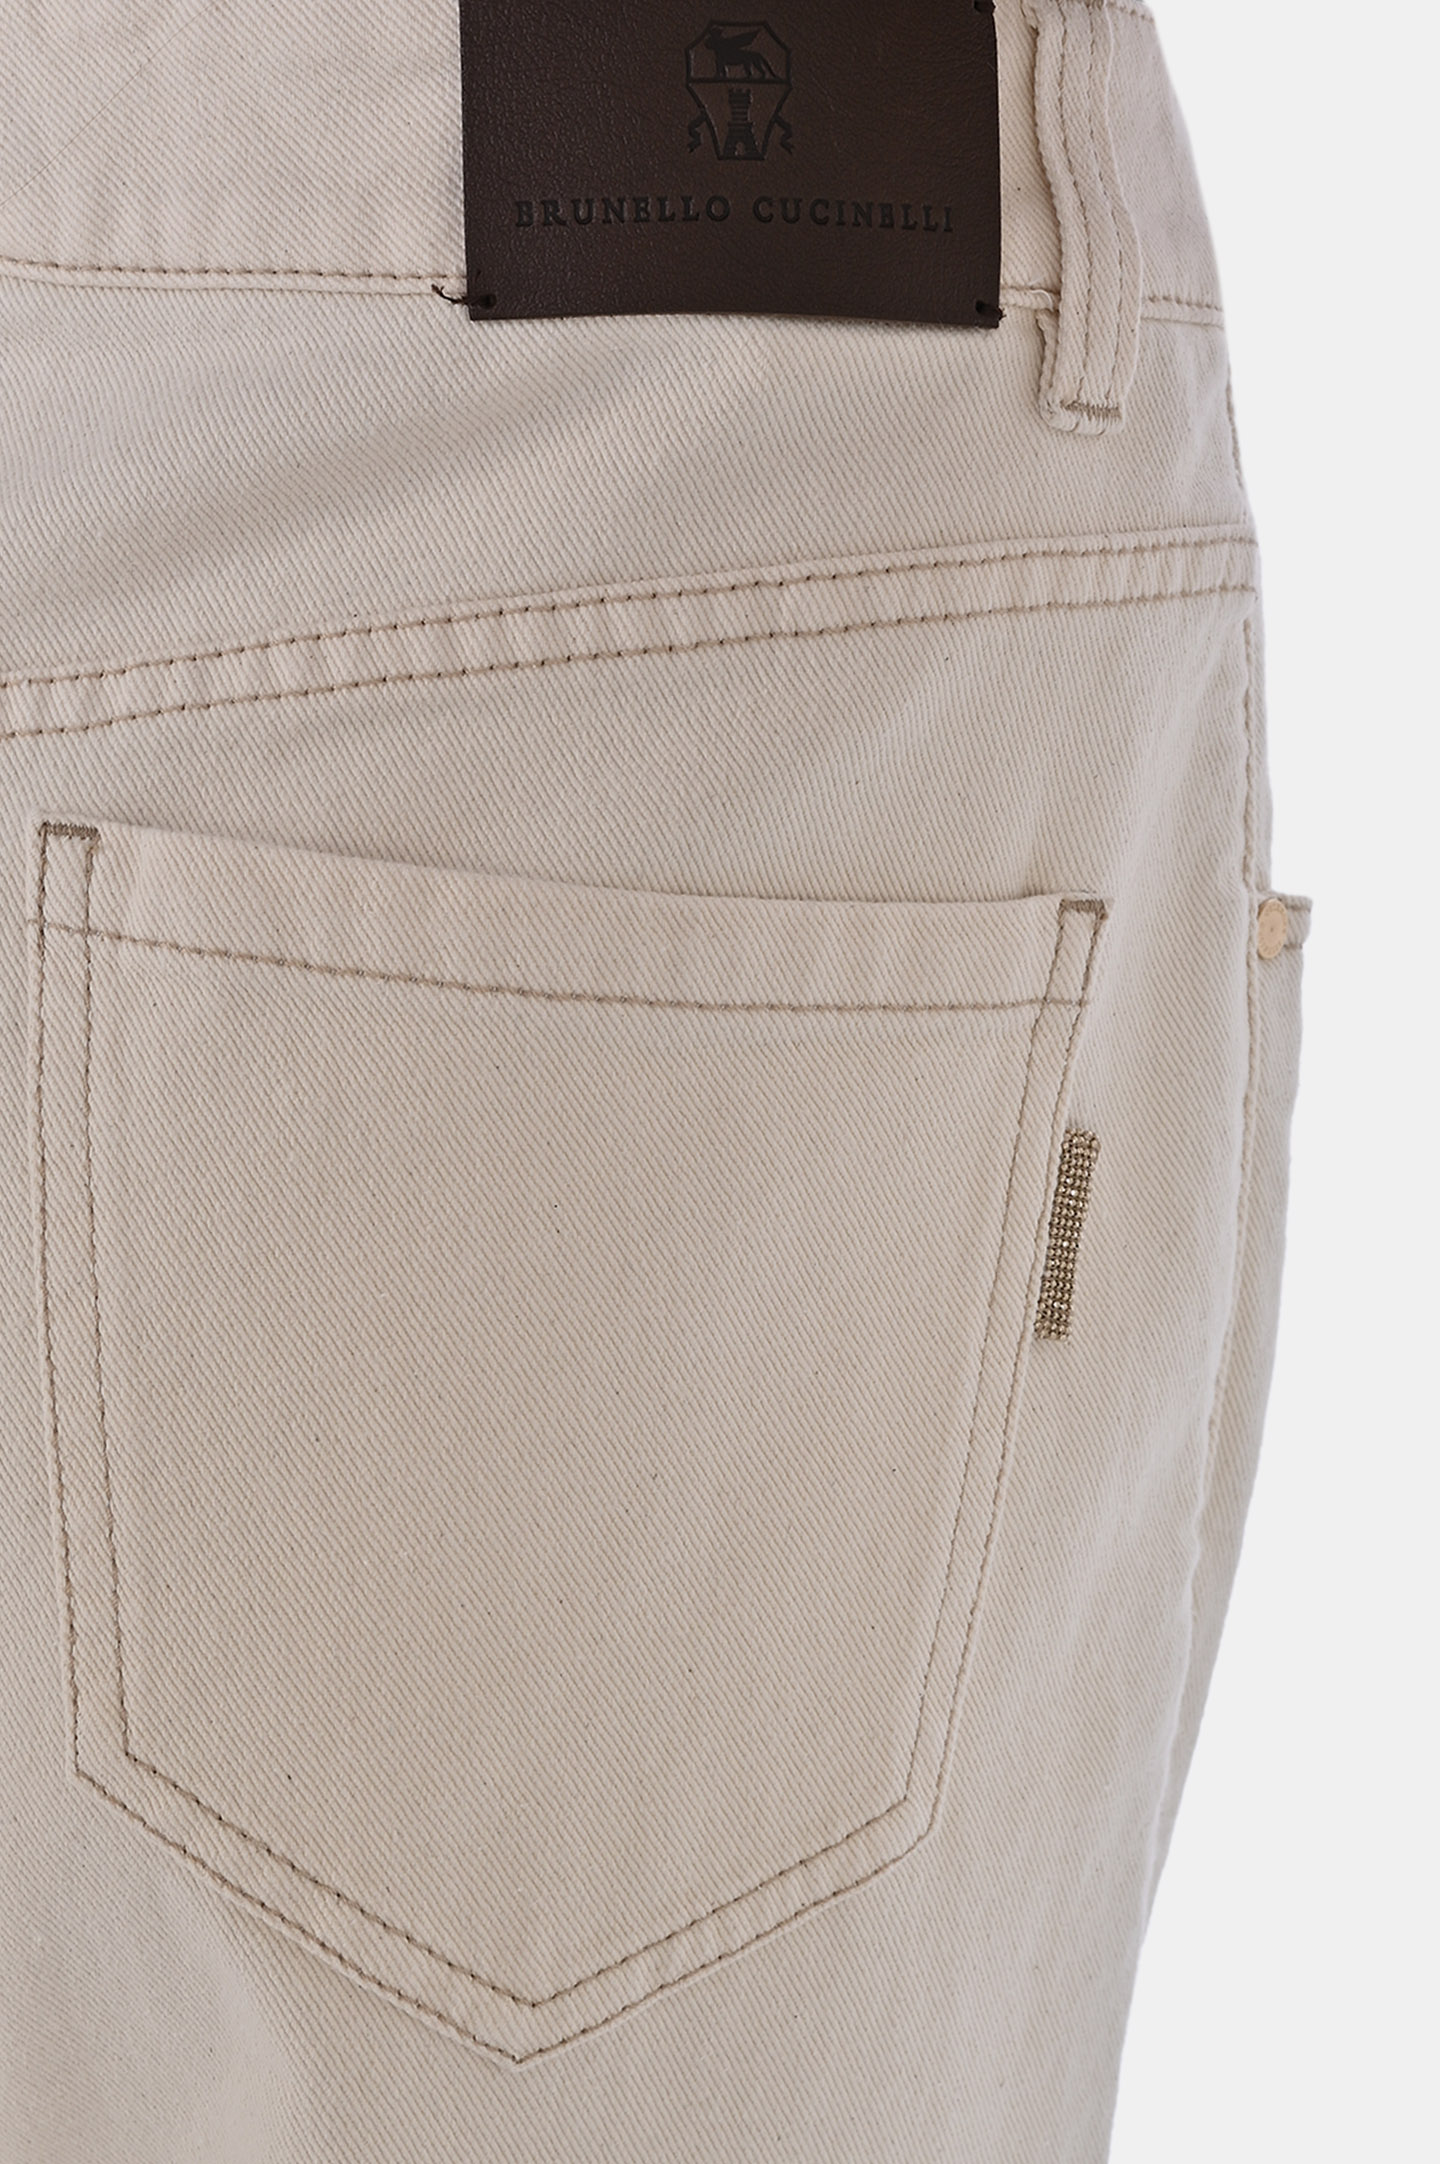 Широкие джинсы BRUNELLO  CUCINELLI MB057P5821, цвет: Молочный, Женский